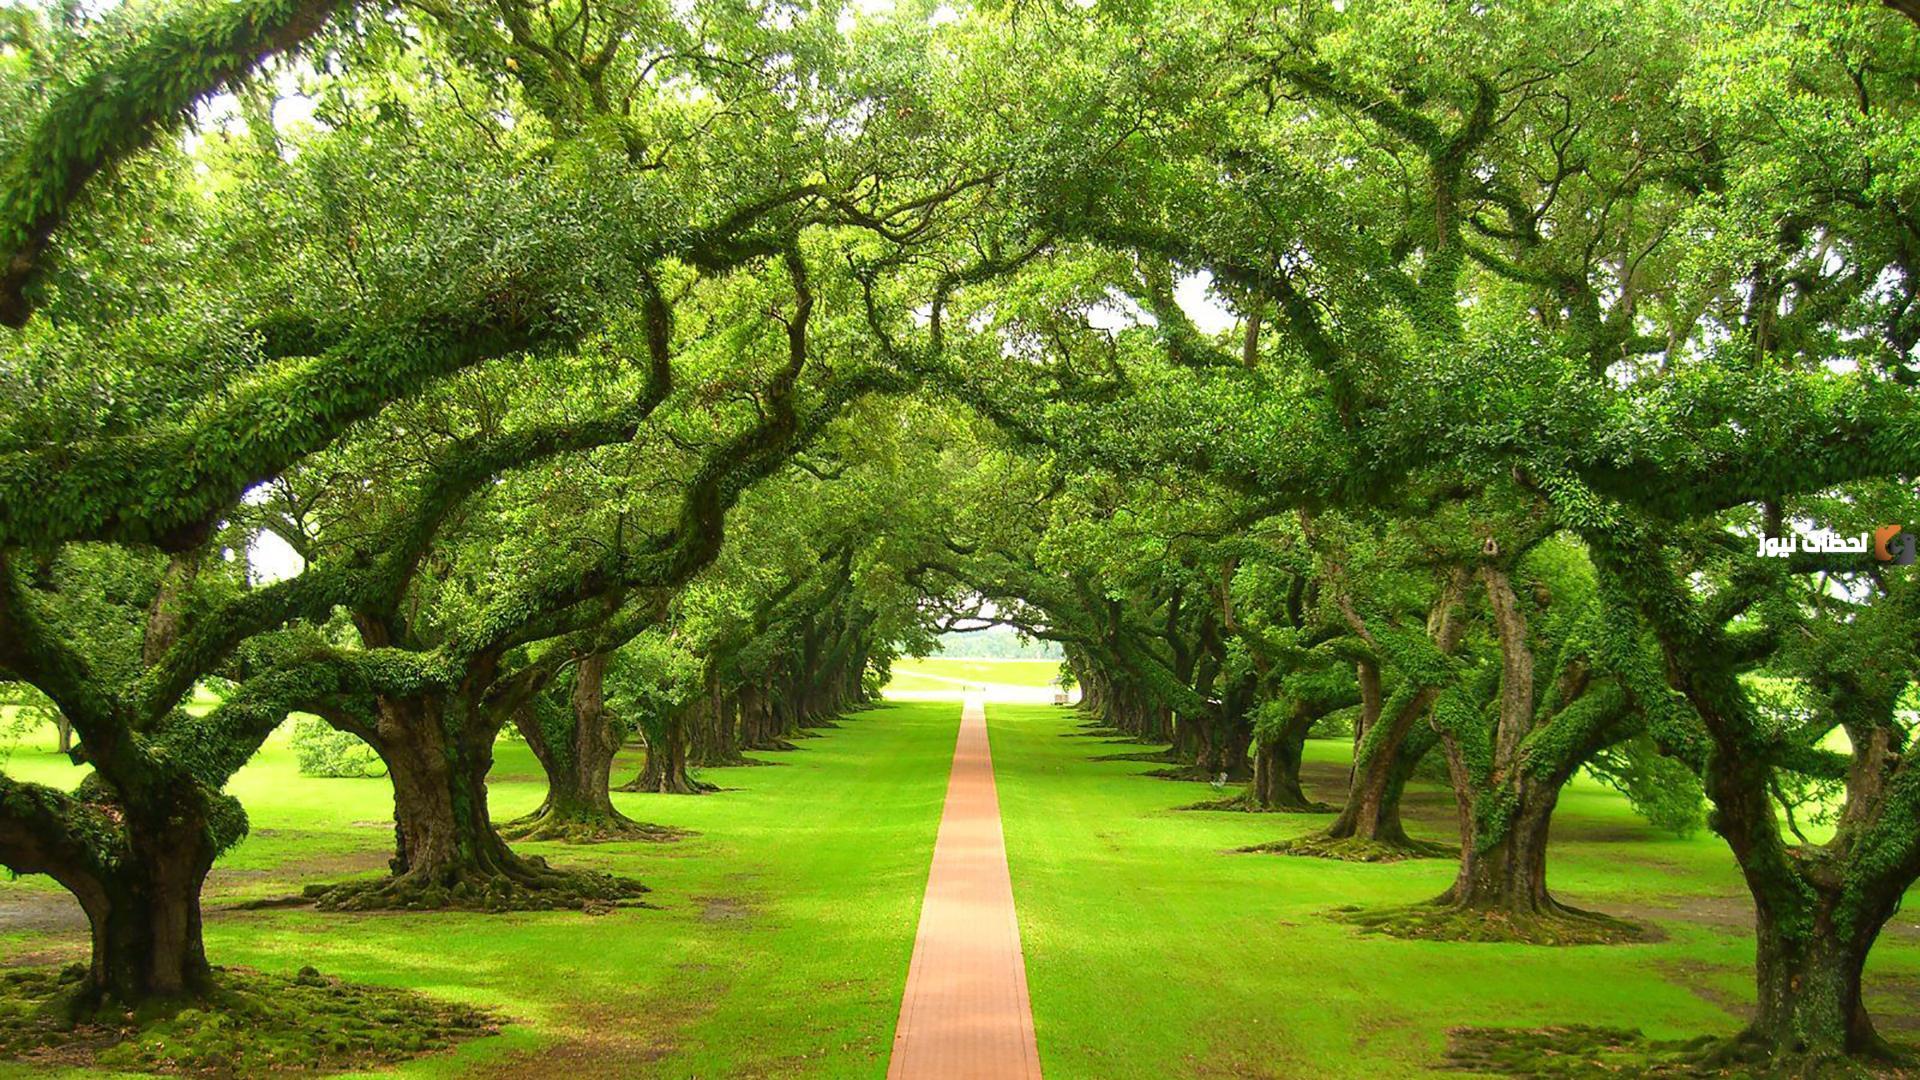 นิมิตที่สวยที่สุด: การตีความต้นไม้สีเขียวในความฝัน: พวกเขาบอกอะไร? - การตีความความฝันออนไลน์